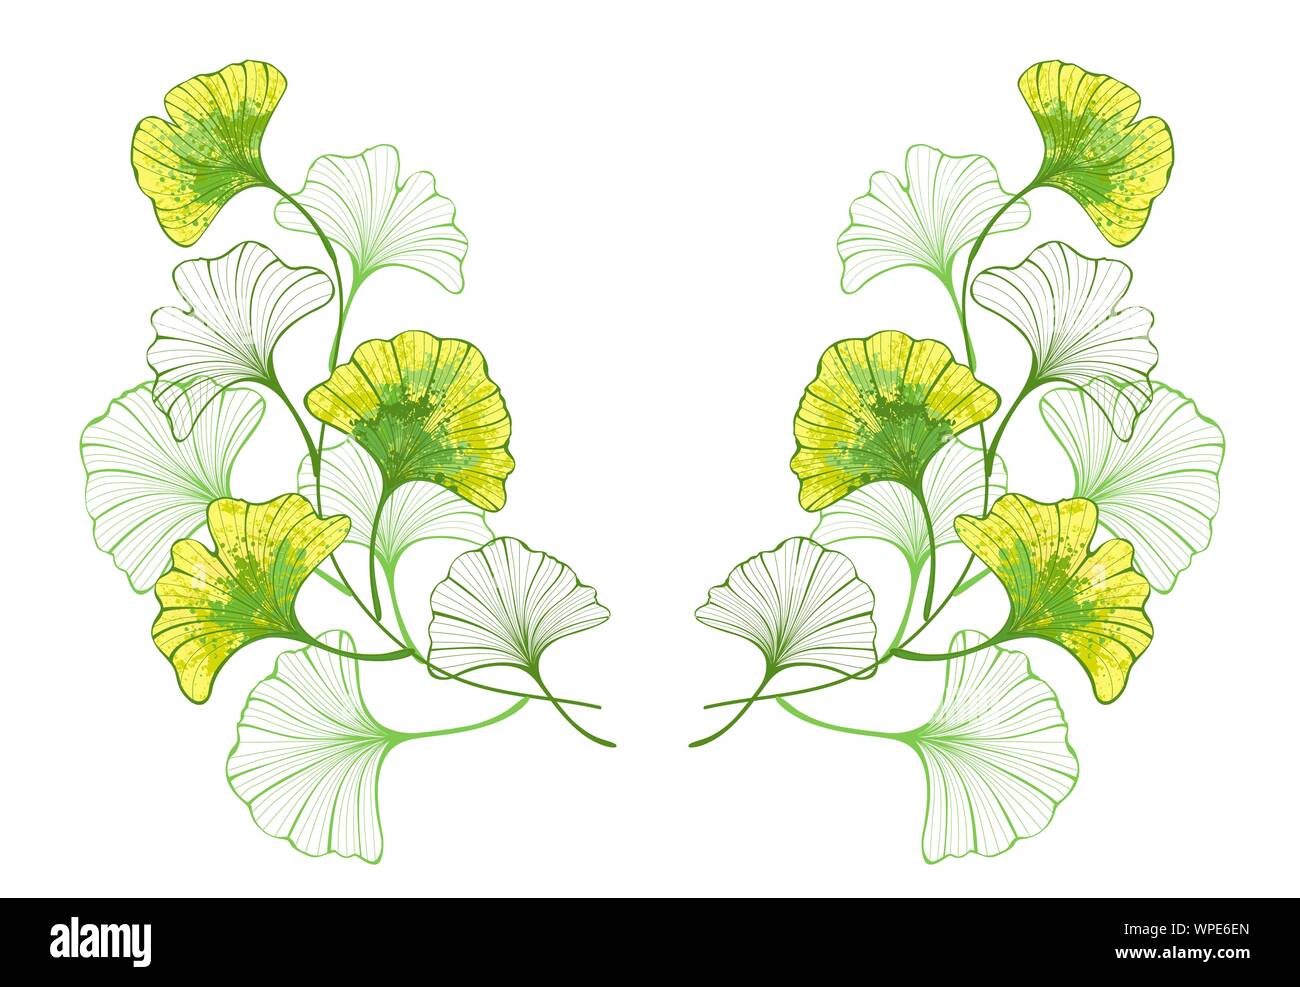 Motif symétrique de brindilles et artistique, Automne, couleurs, feuilles de ginkgo biloba peint avec de la peinture verte et jaune sur fond blanc. Illustration de Vecteur